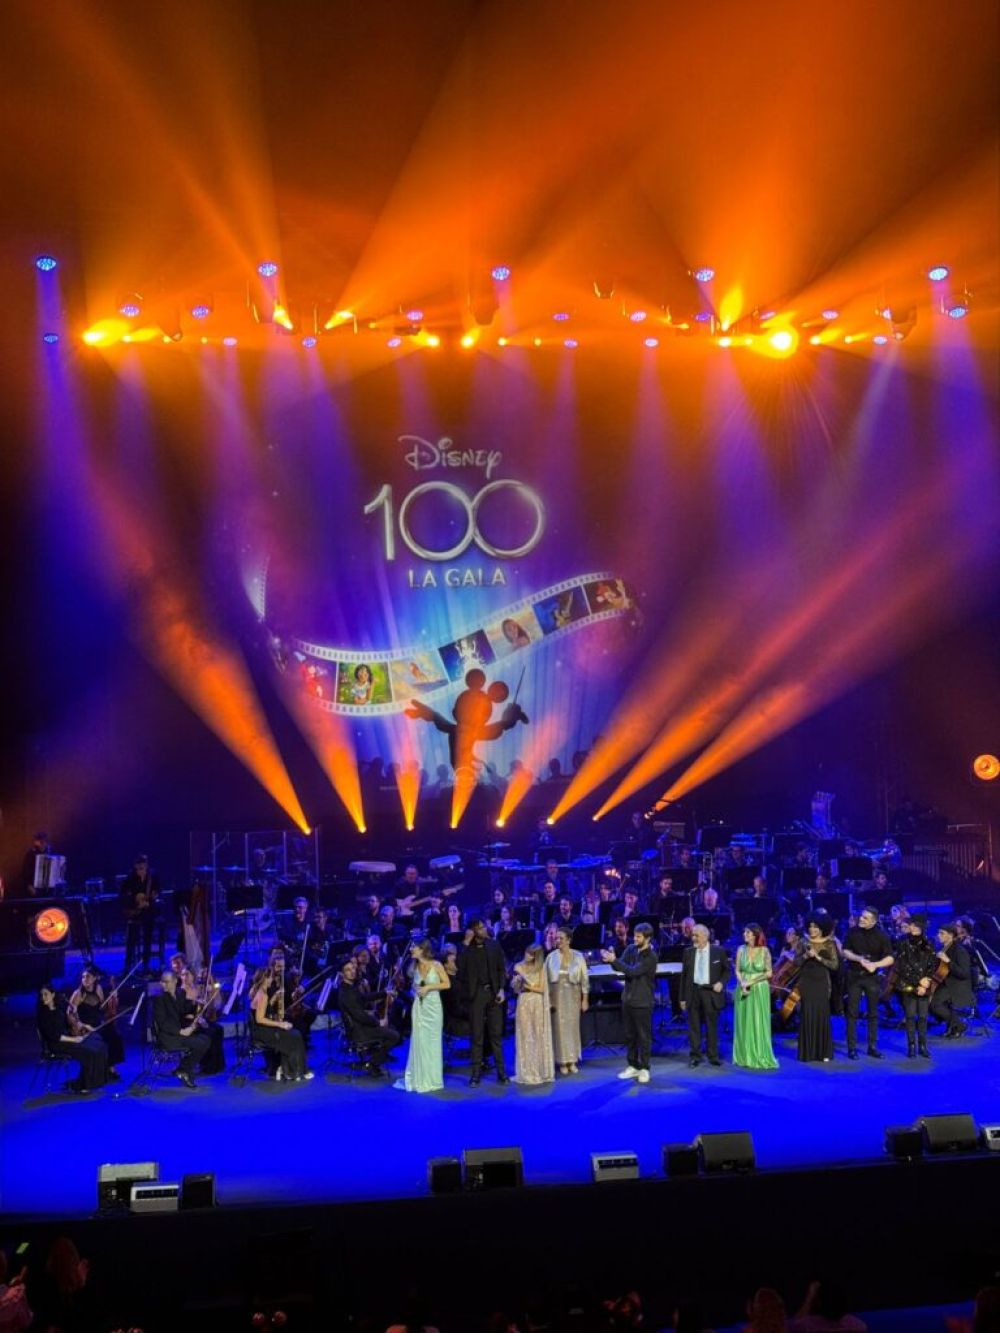 Pixmob y efectos especiales  en la  gala del 100 aniversario de disney